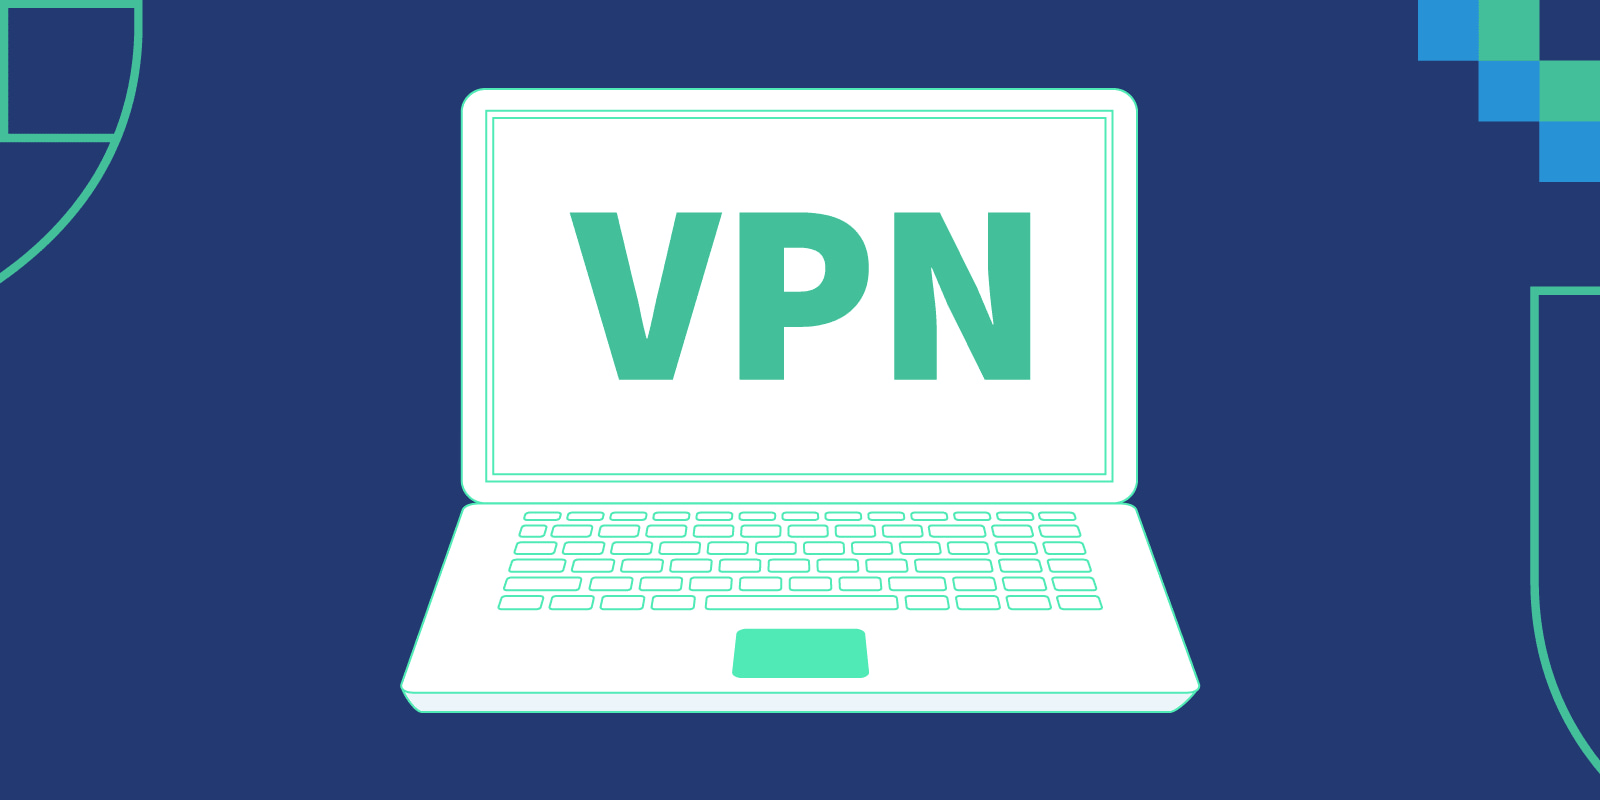 طريقة استخدام وإعداد VPN على اندرويد وايفون والكمبيوتر